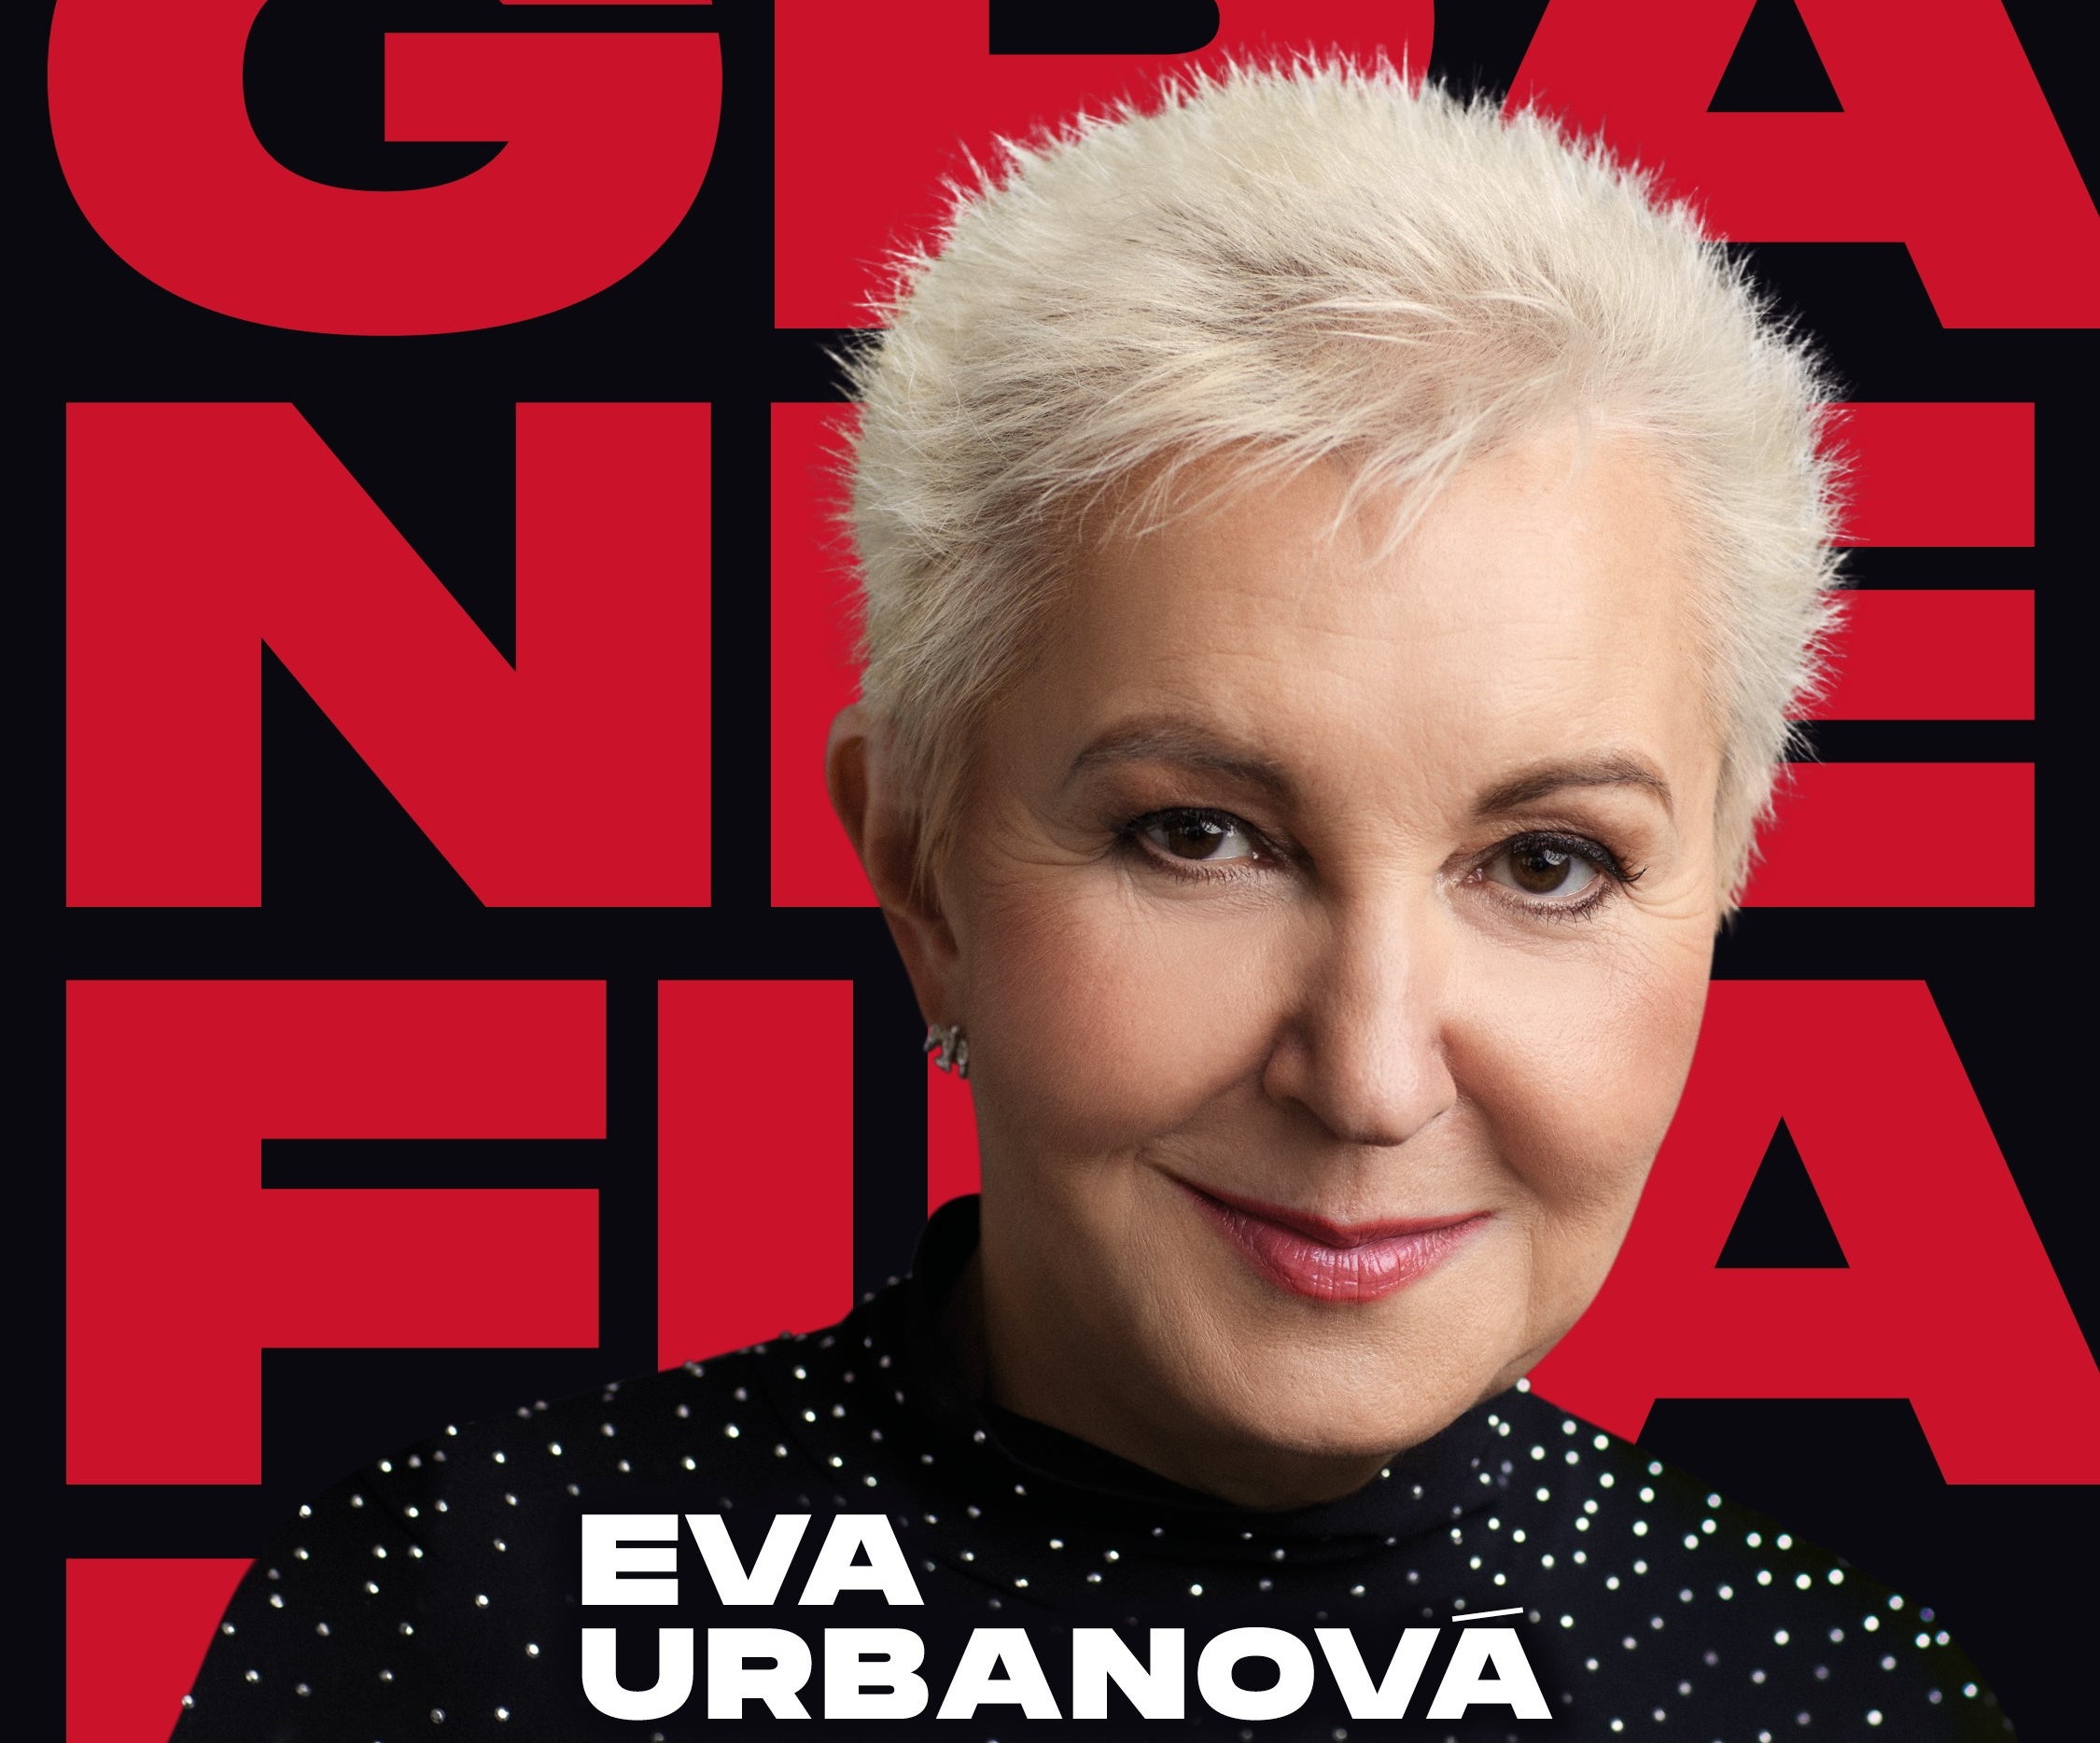 Eva Urbanová - Grande Finale- Praha O2 arena -O2 arena Praha 9 Českomoravská 2345/17a, Praha 9 19000